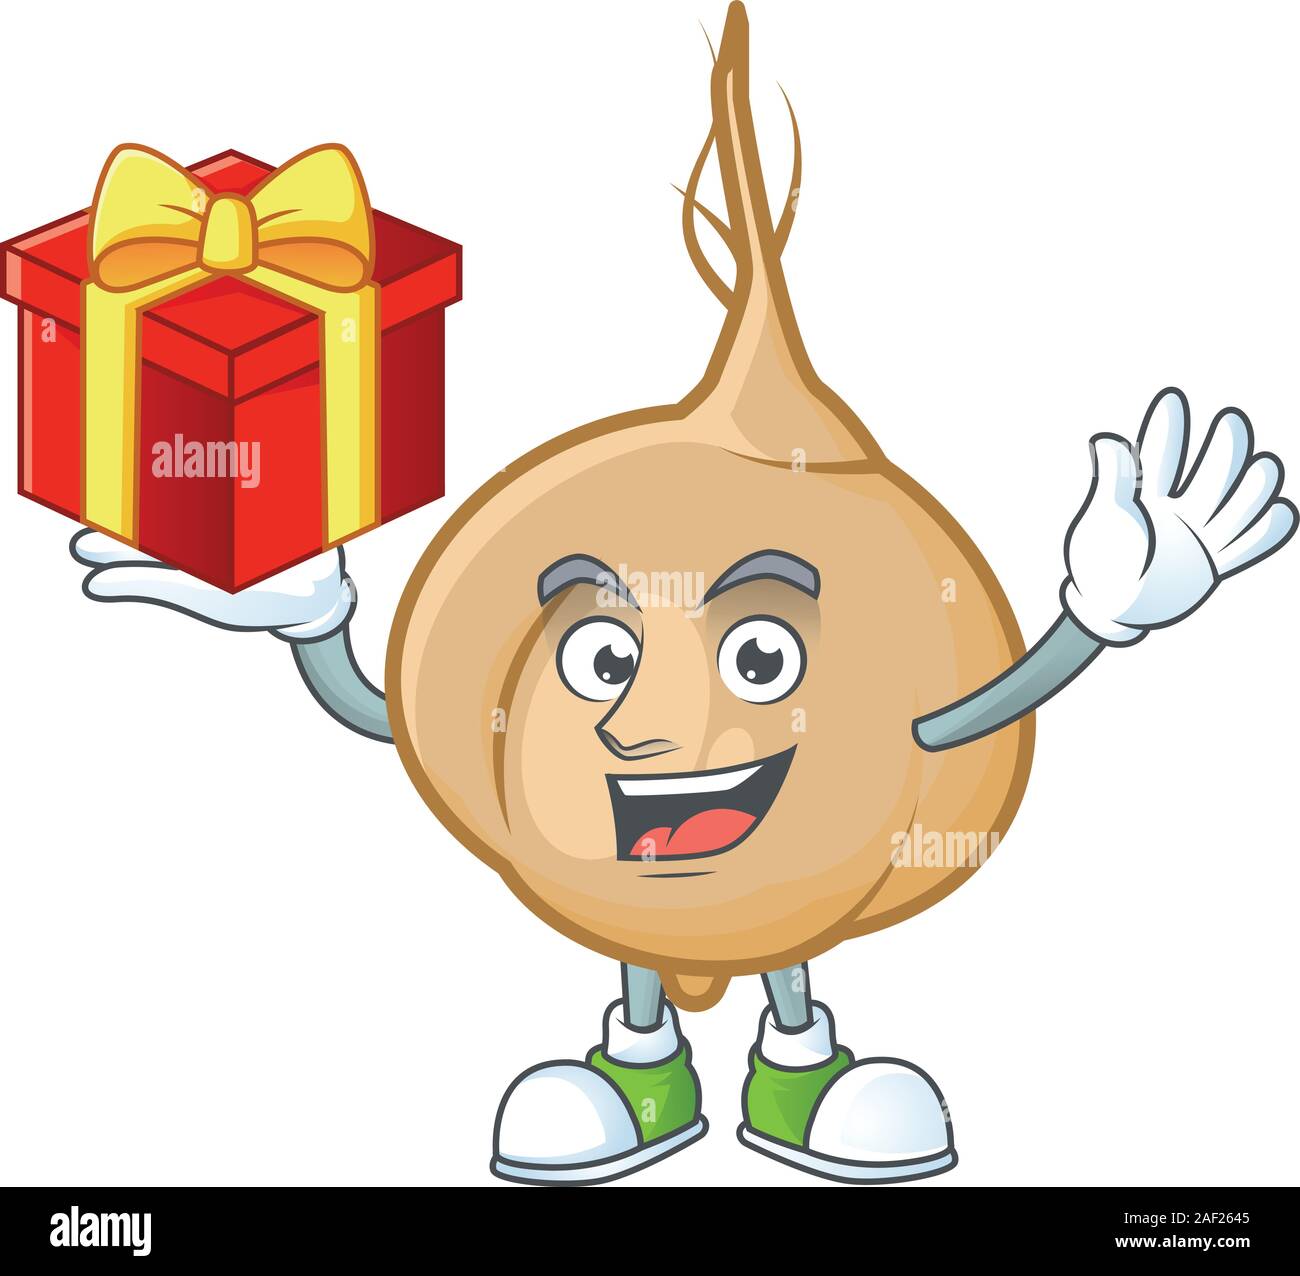 Mascot of jicama character up a gift Stock Vector